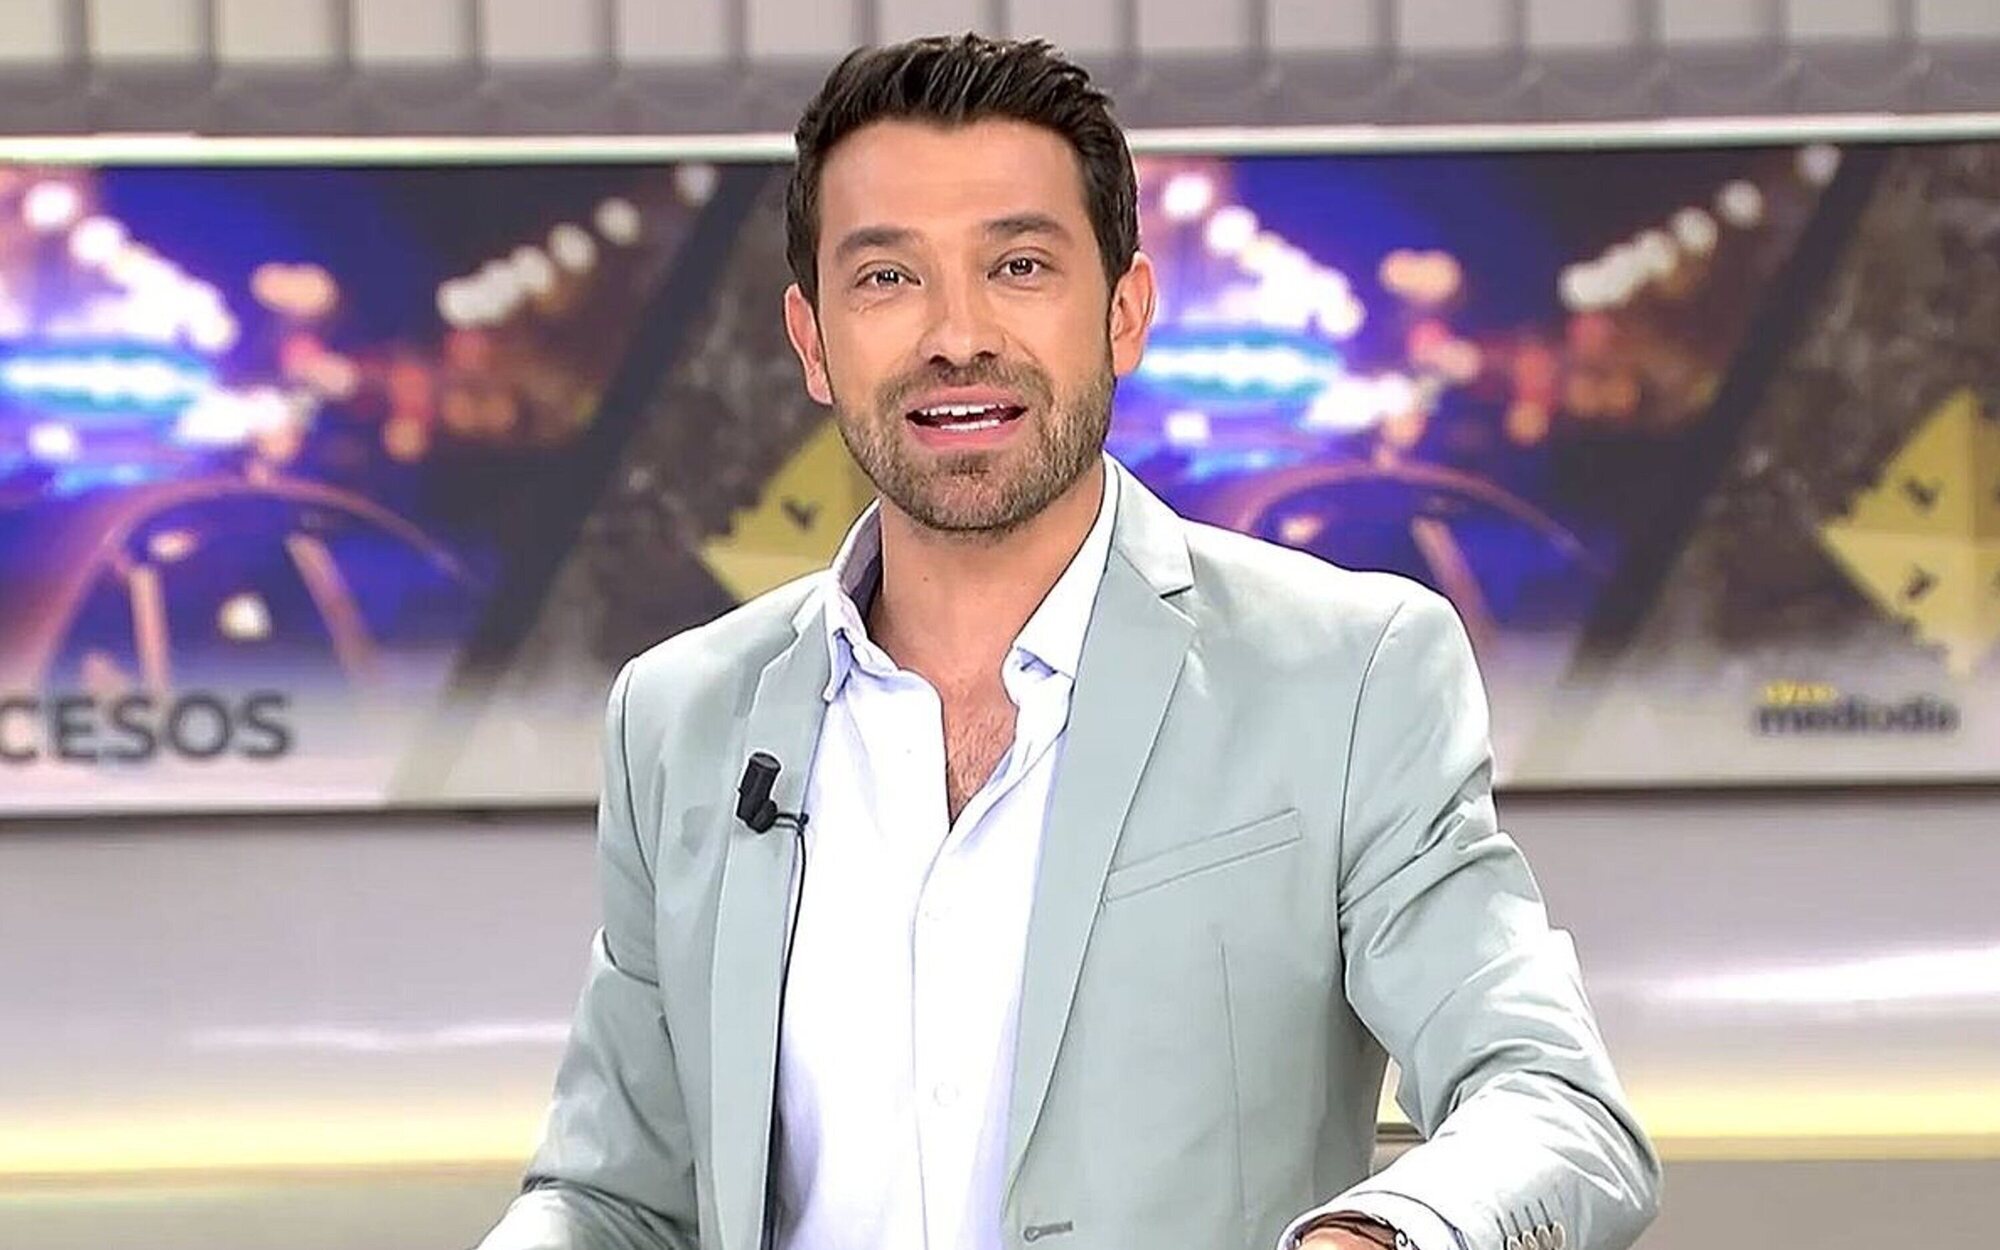 Marc Calderó sustituye a Sonsoles Ónega como presentador de 'Ya es mediodía' durante el verano